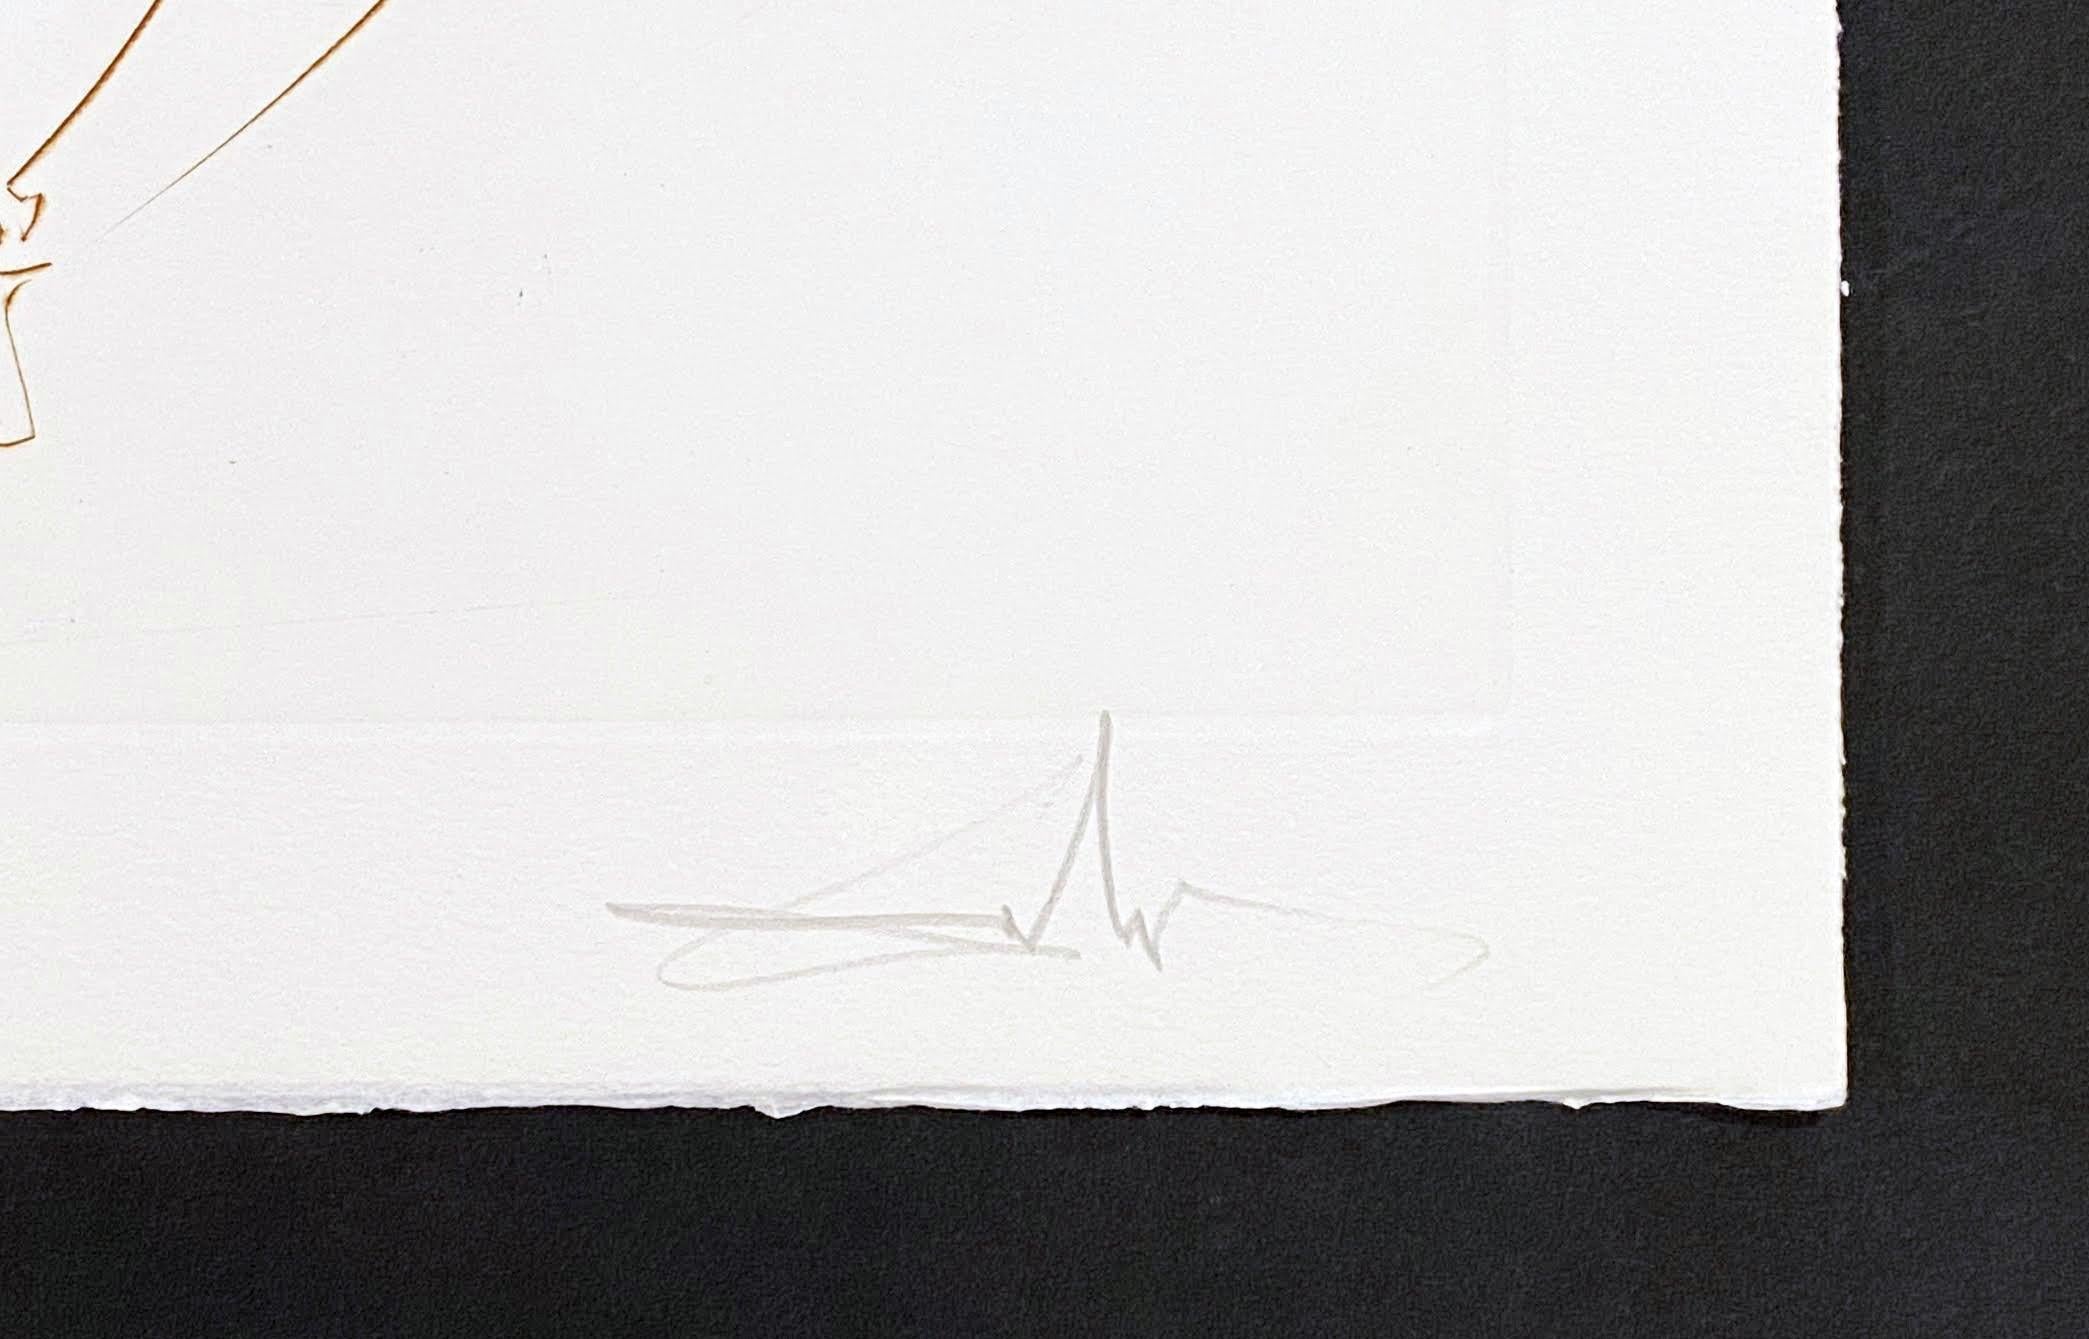 Artistics : Salvador Dali
Titre : Le col de Gadalore
Portfolio : La quête du Graal
Moyen d'expression : Gravure en couleur
Année : 1975
Edition : 39/100
Taille du cadre : 27